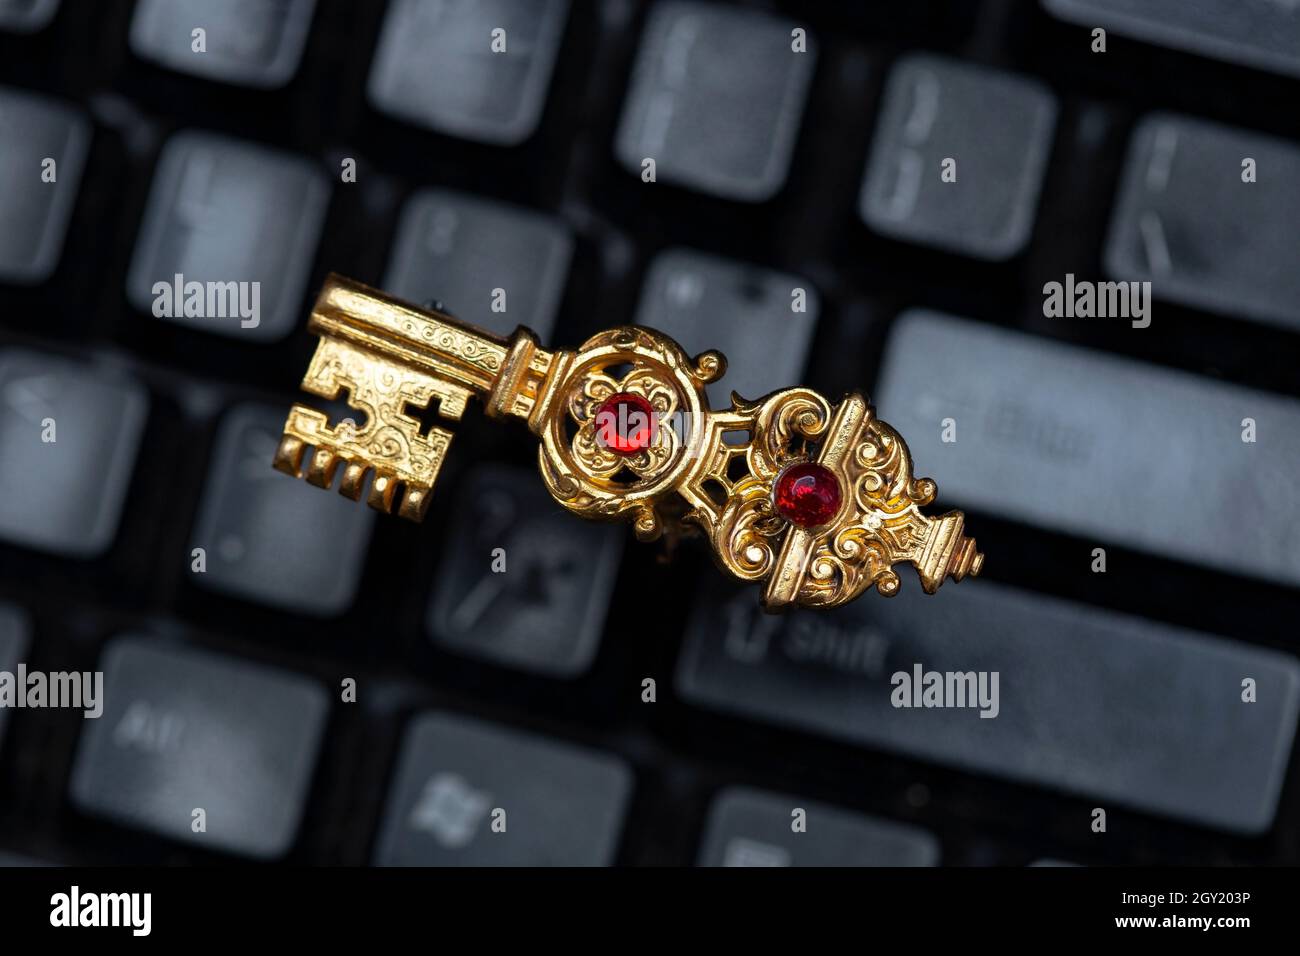 Touche dorée vintage sur un clavier noir représentant les anciens mots de passe Banque D'Images